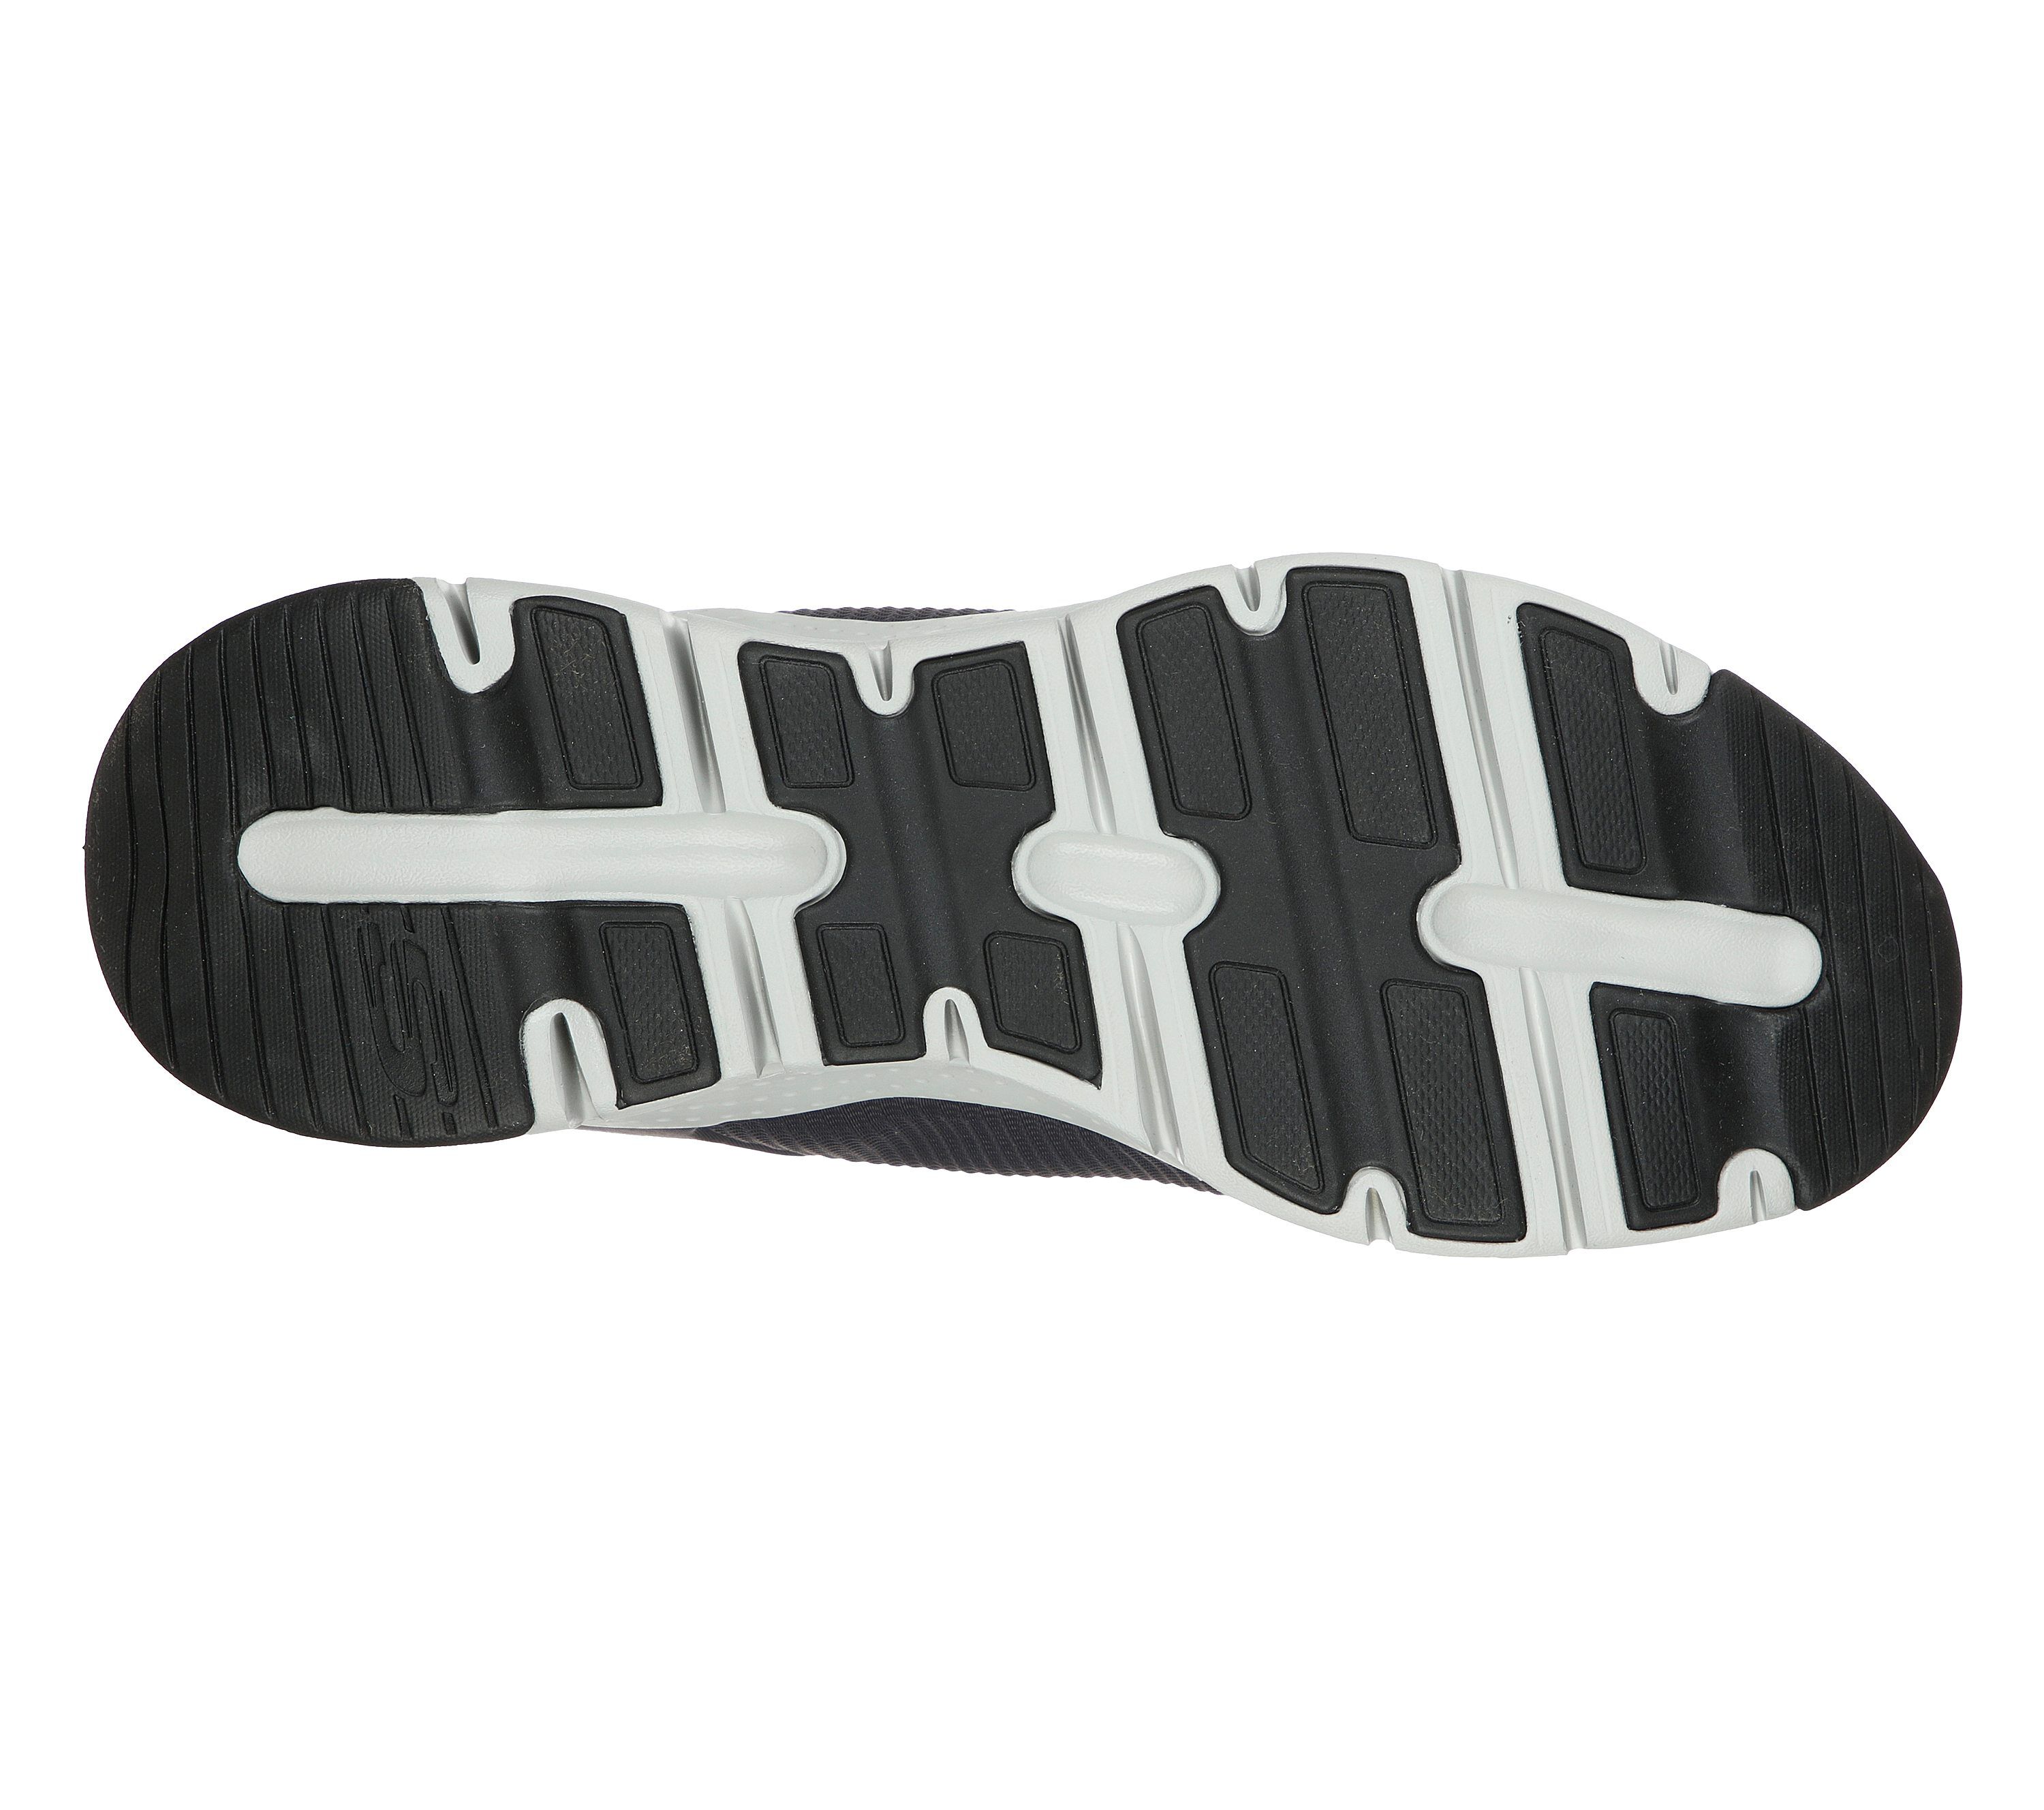 Skechers Arch Fit - Titan - Charcoal Textile